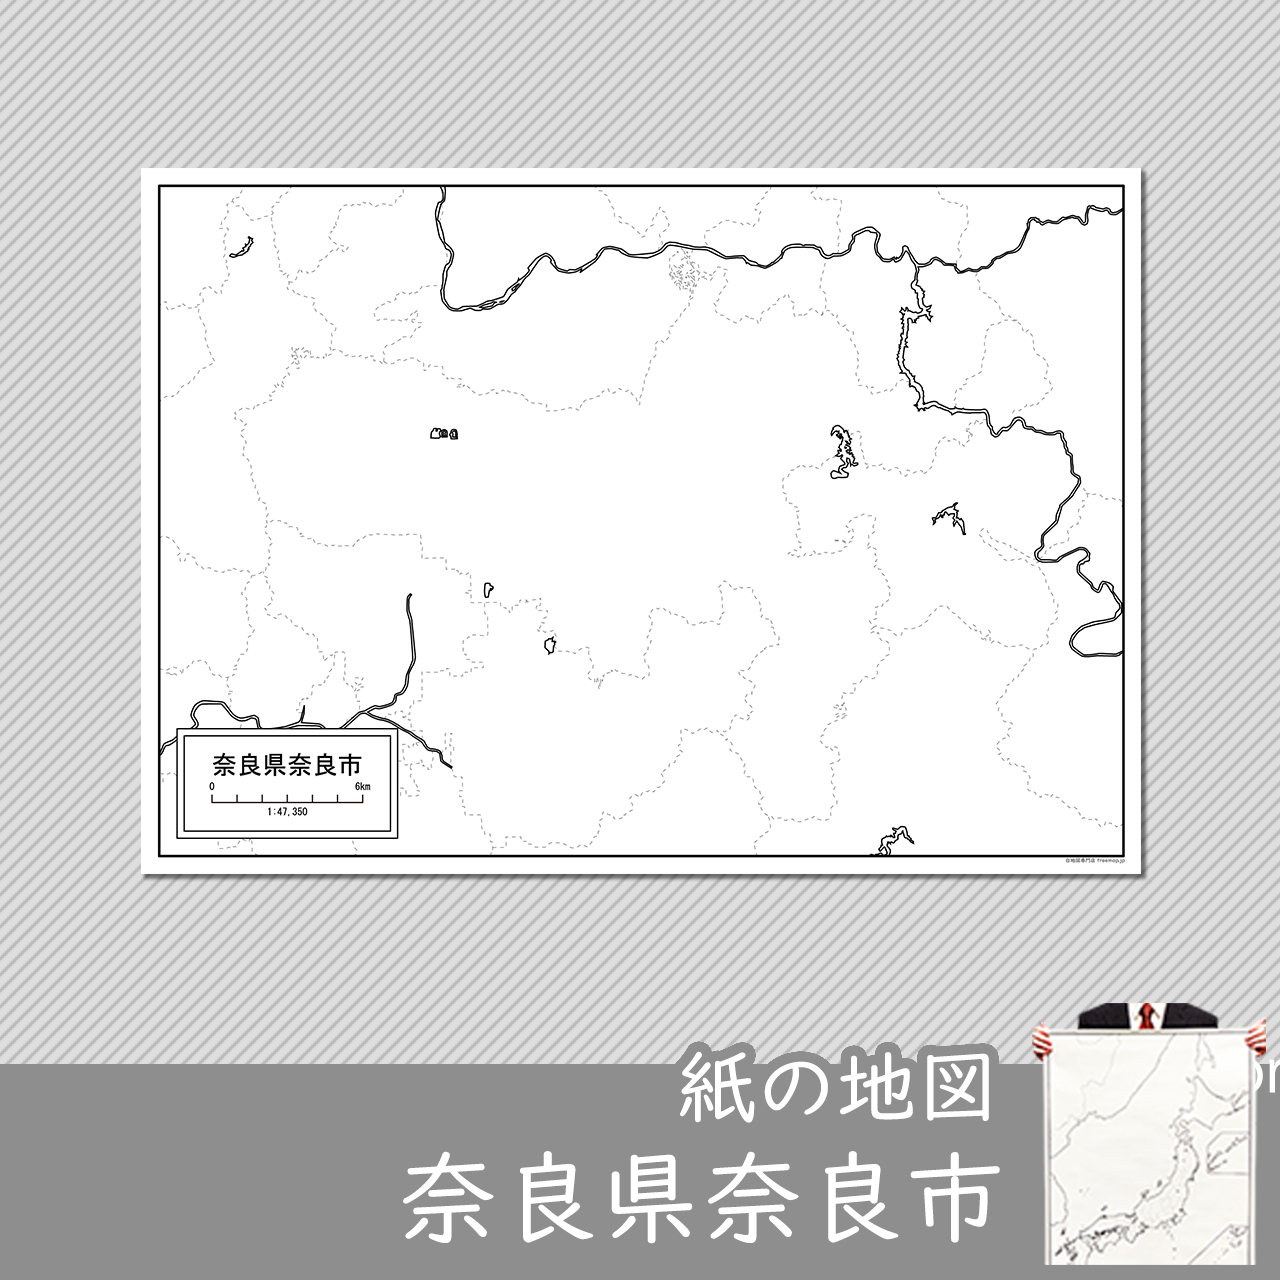 奈良市の紙の白地図のサムネイル